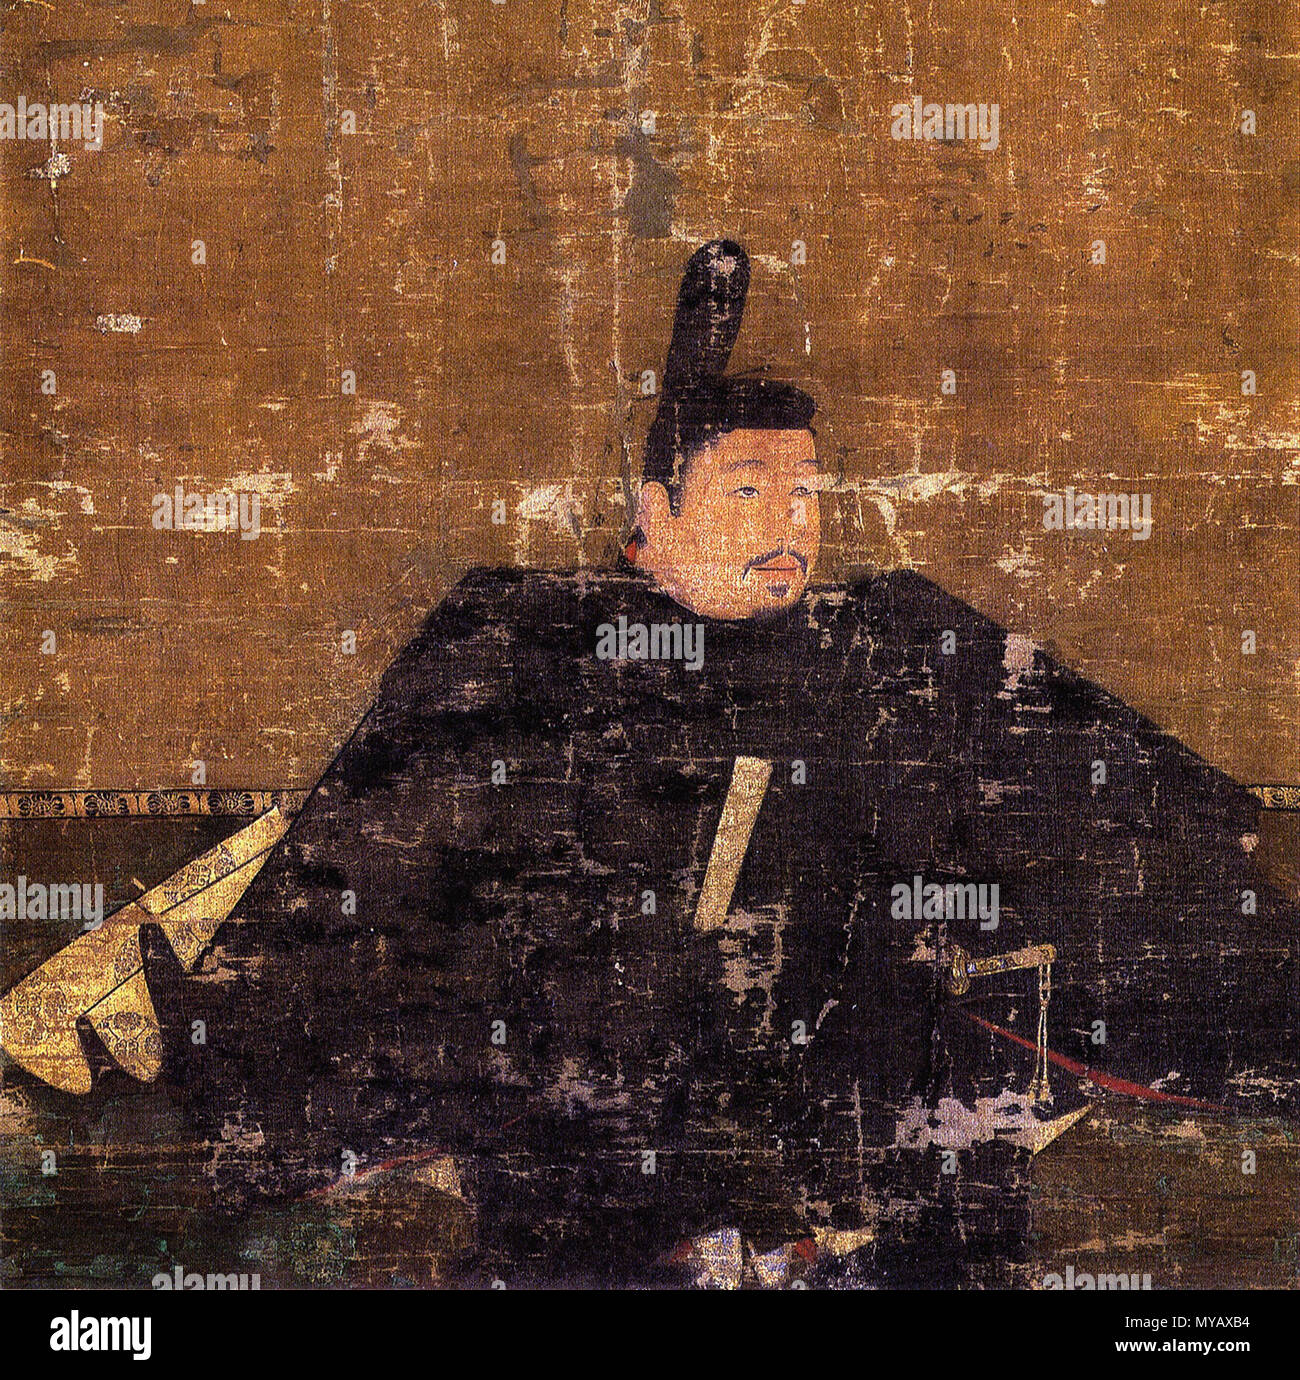 . 日本語: 足利義詮像 English: Portrait of Ashikaga Yoshiakira . 14th century. Unknown 52 Ashikaga Yoshiakira cropped Stock Photo